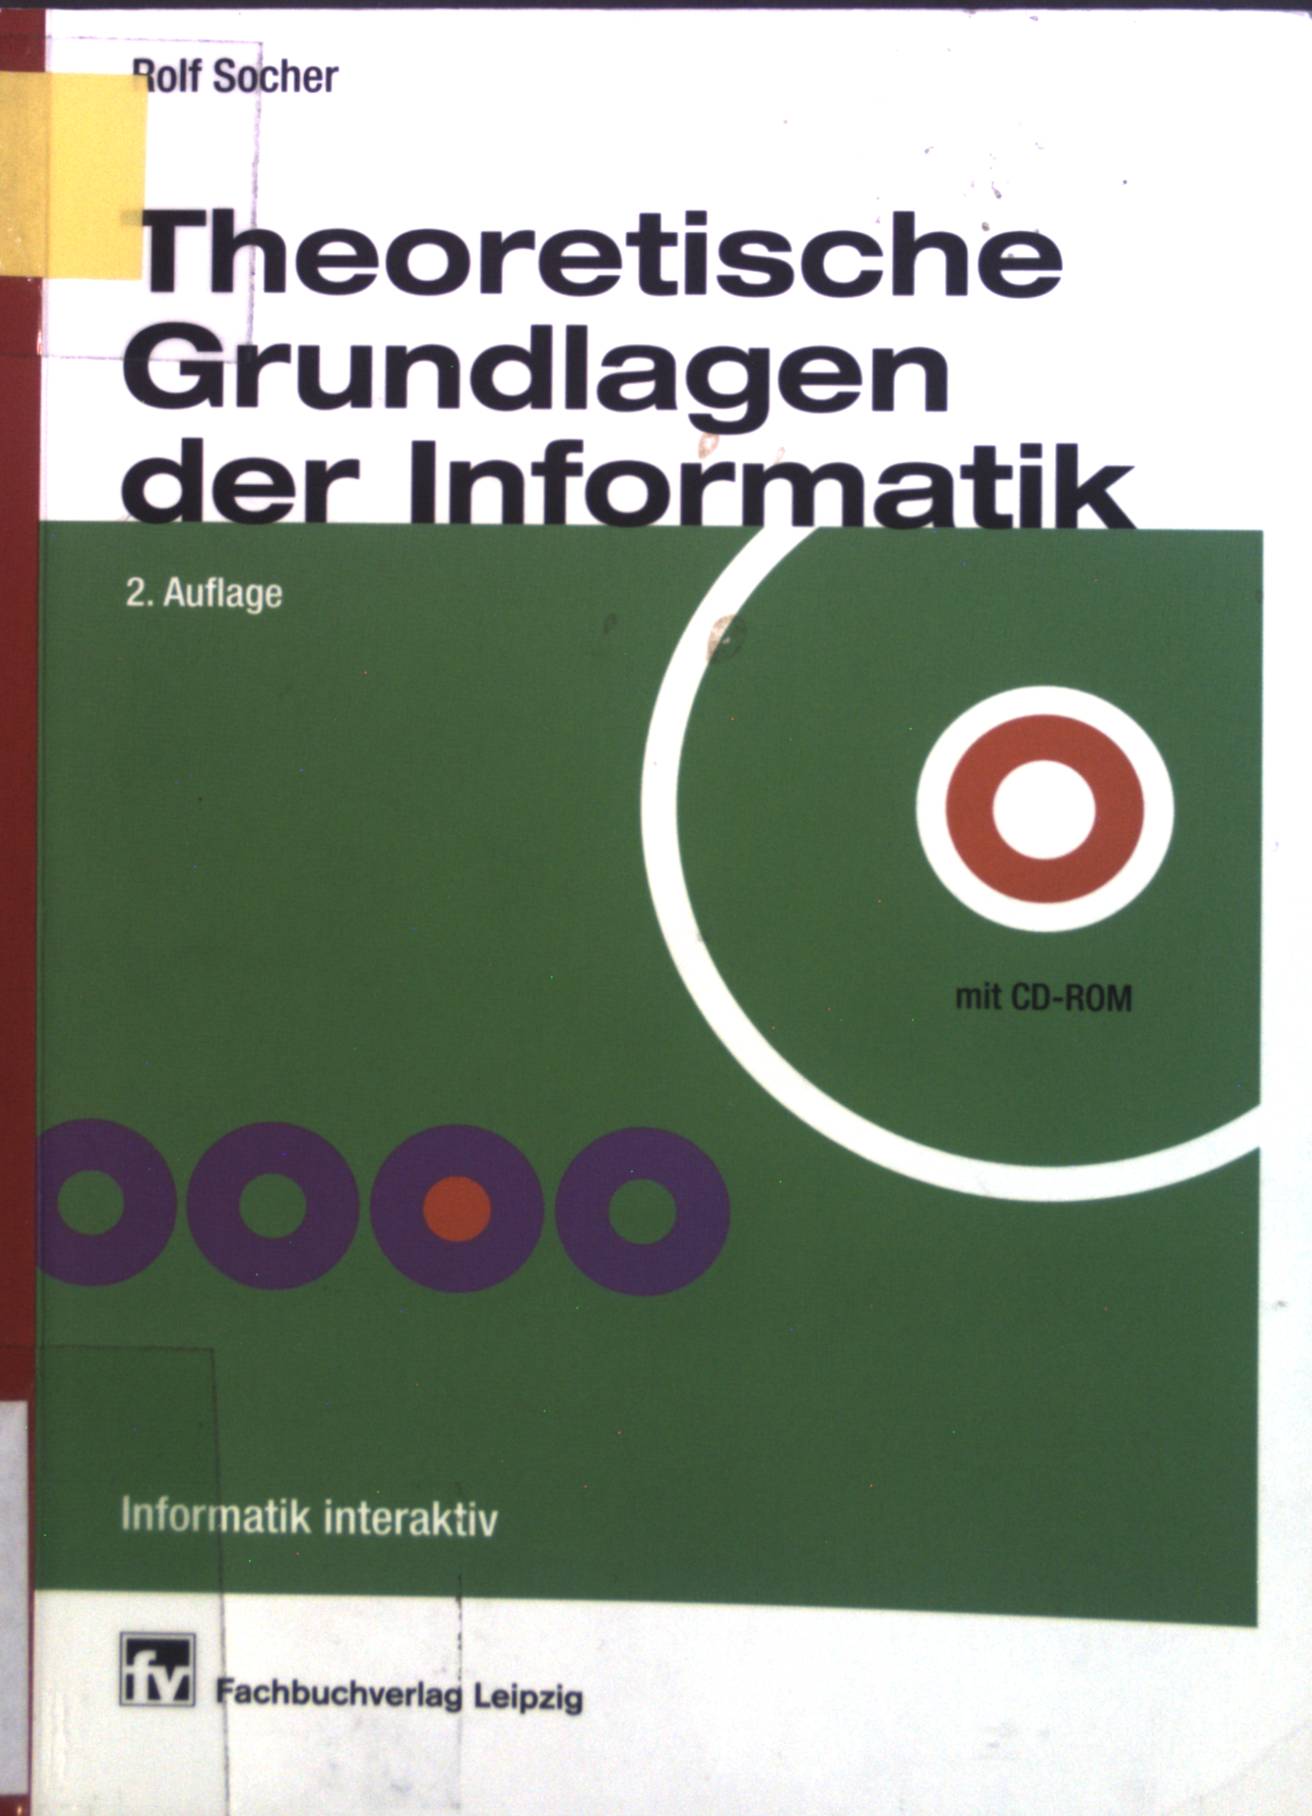 Theoretische Grundlagen der Informatik. Informatik interaktiv - Socher, Rolf